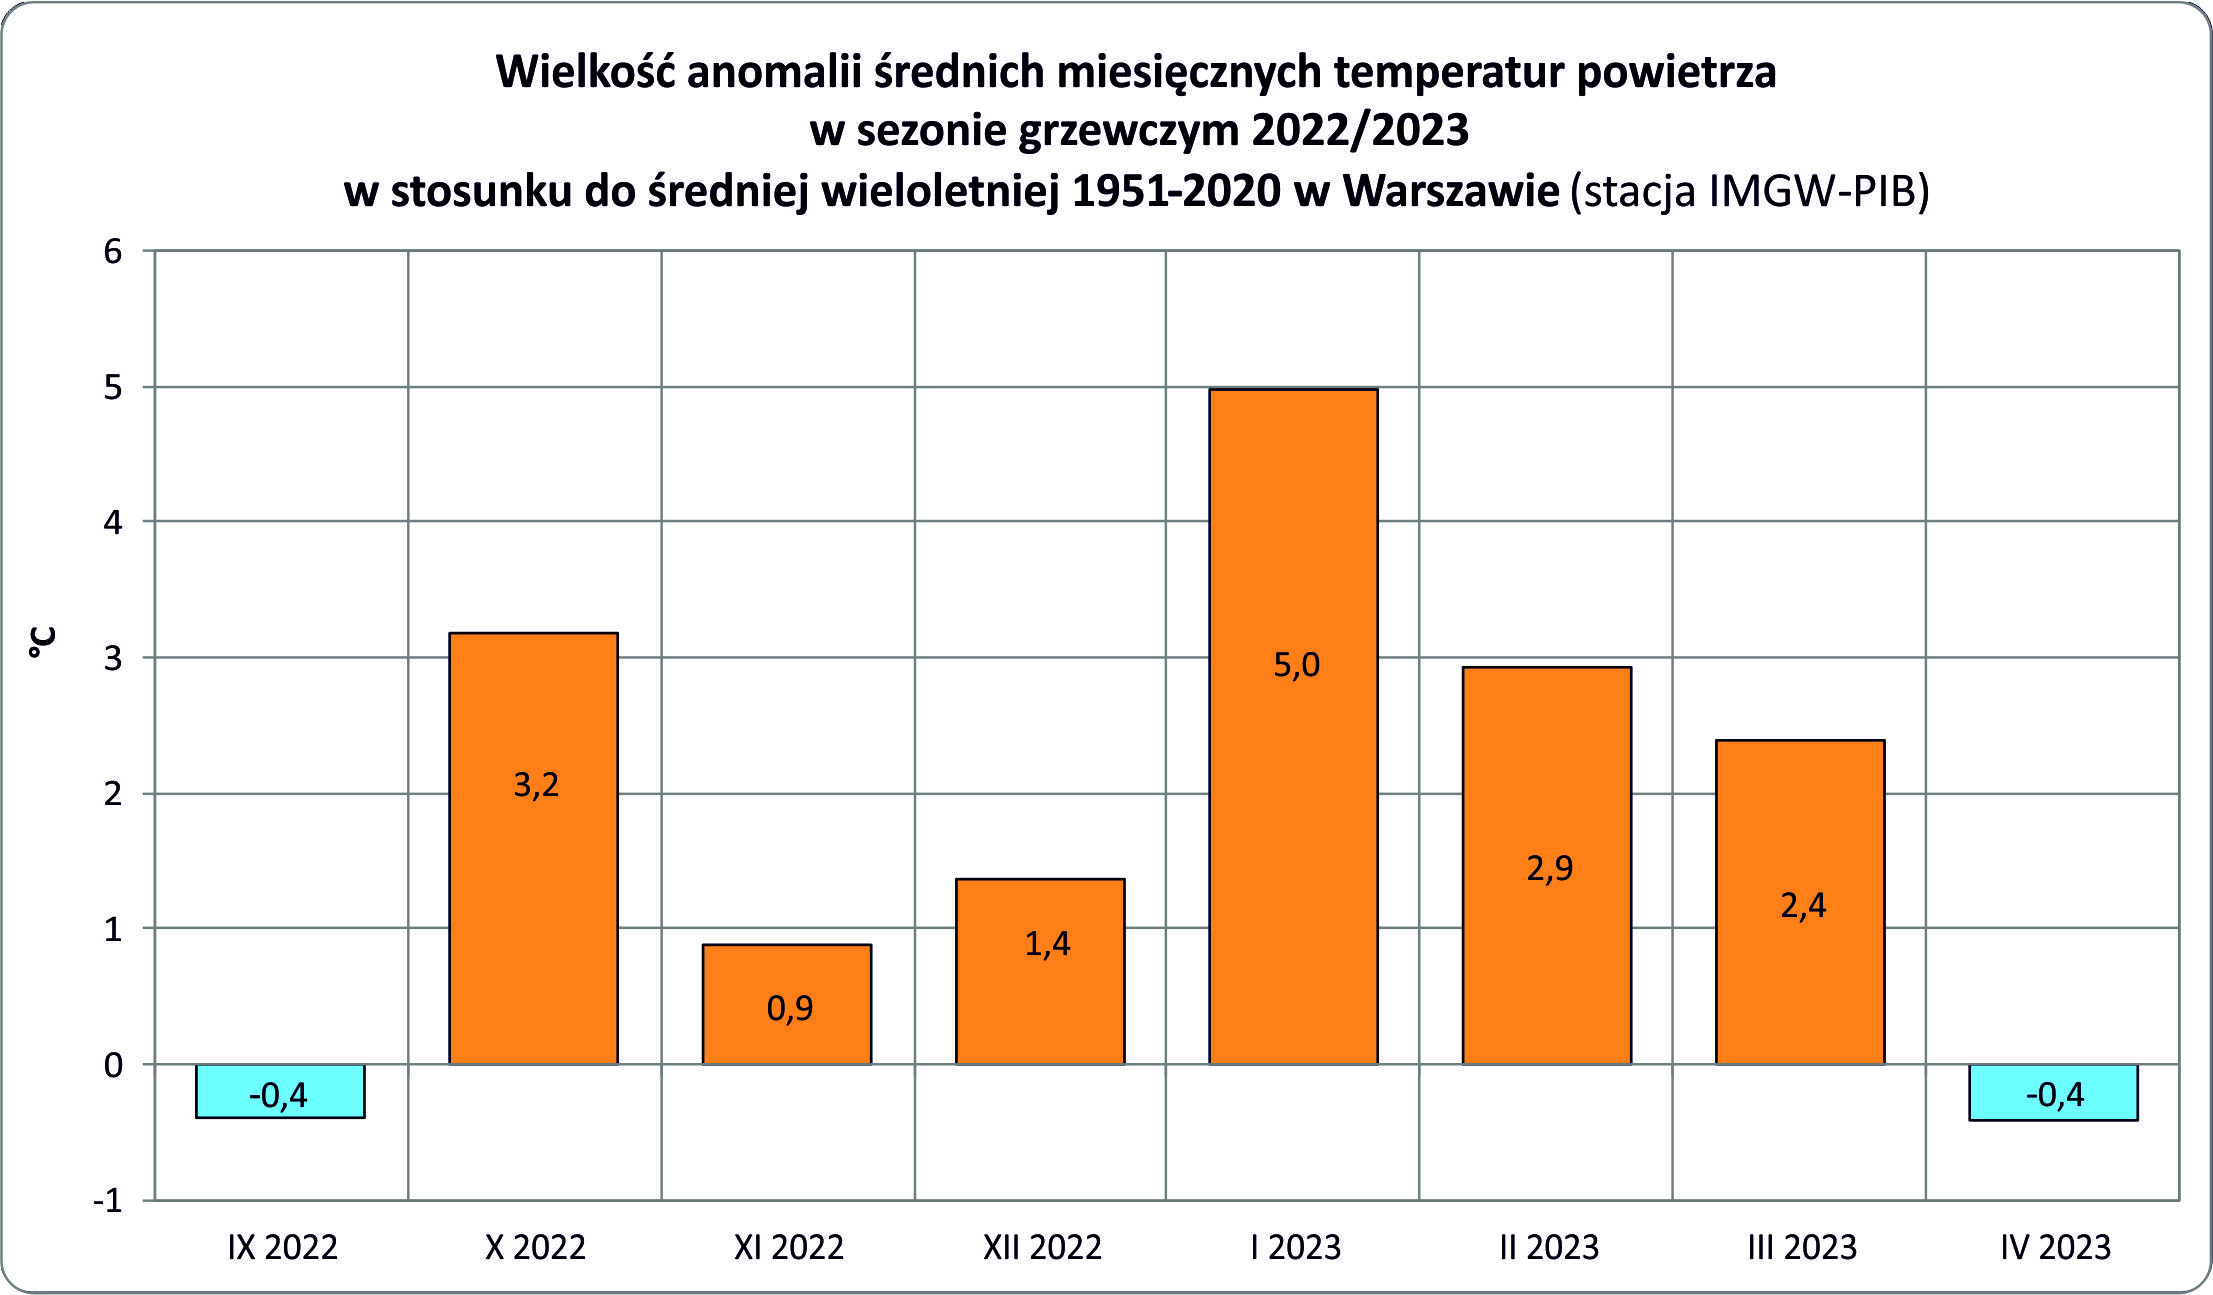 Wielkość anomalii średnich miesięcznych temperatur w sezonie grzewczym 2022/2023 w stosunku do średniej wieloletniej 1951-2020 w Warszawie - od -0,4 we wrześniu, 3,2 październik, 0,9 listopad, 1,4 grudzień, 5 styczeń, 2,9 luty, 2,4 marzec, -0,4 kwiecień